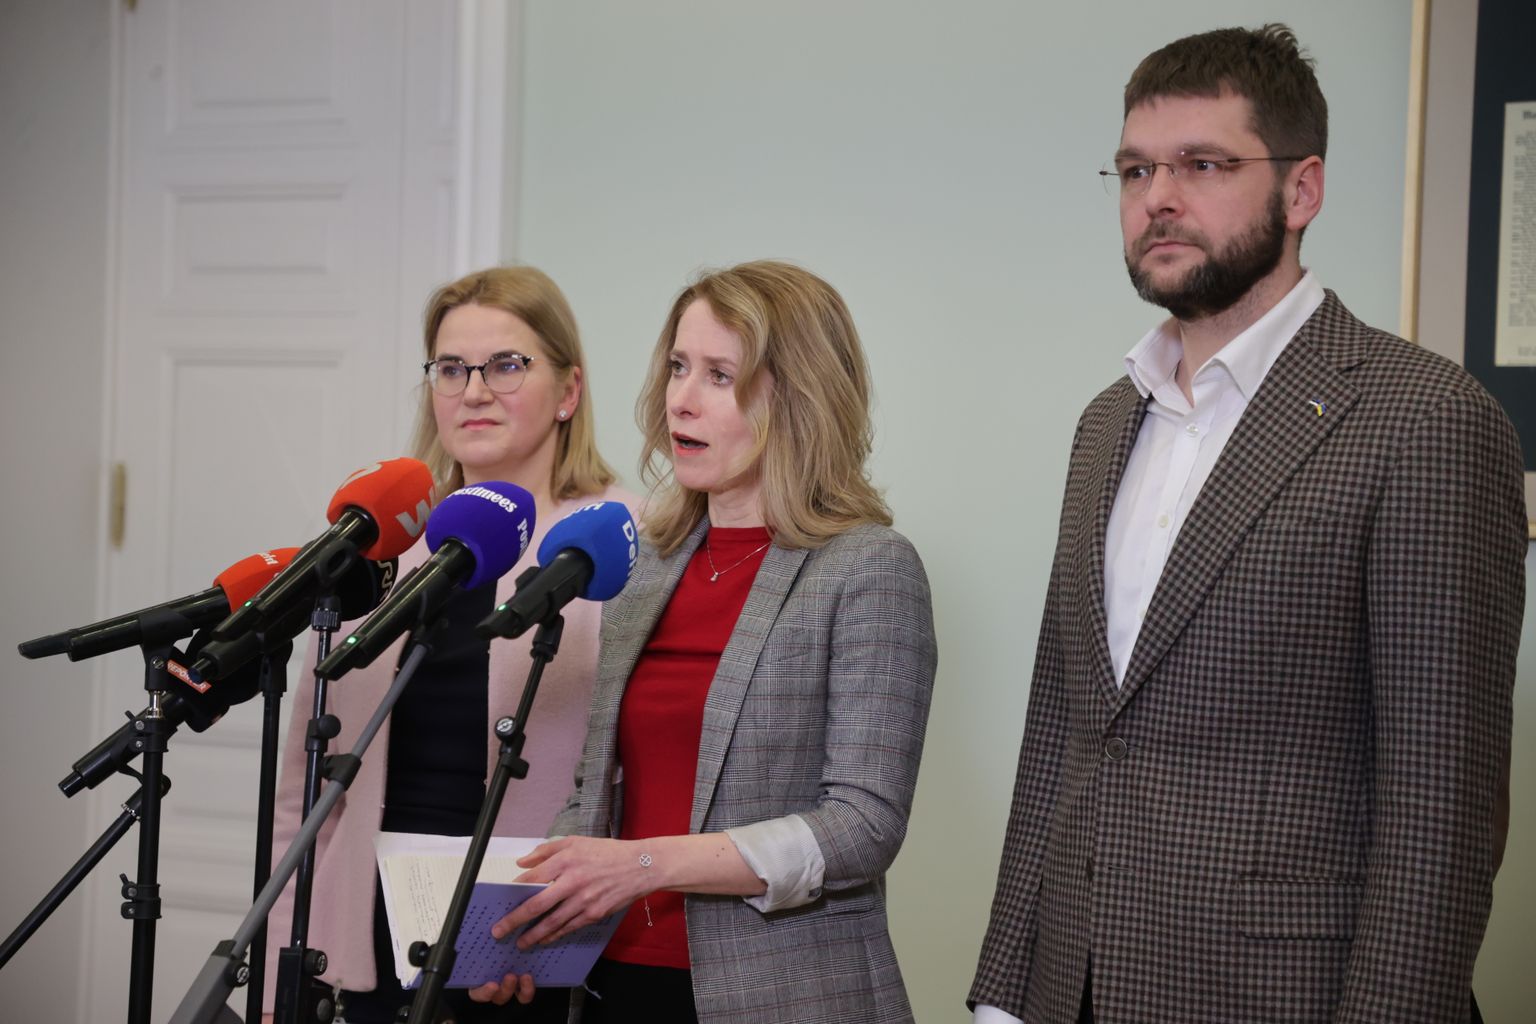 Esmaspäeval andsid ülevaate koalitsioonikõnelustest Kaja Kallas (Reformierakond), Liisa-Ly Pakosta (Eesti 200) ja Jevgeni Ossinovski (Sotsiaaldemokraatlik Erakond).